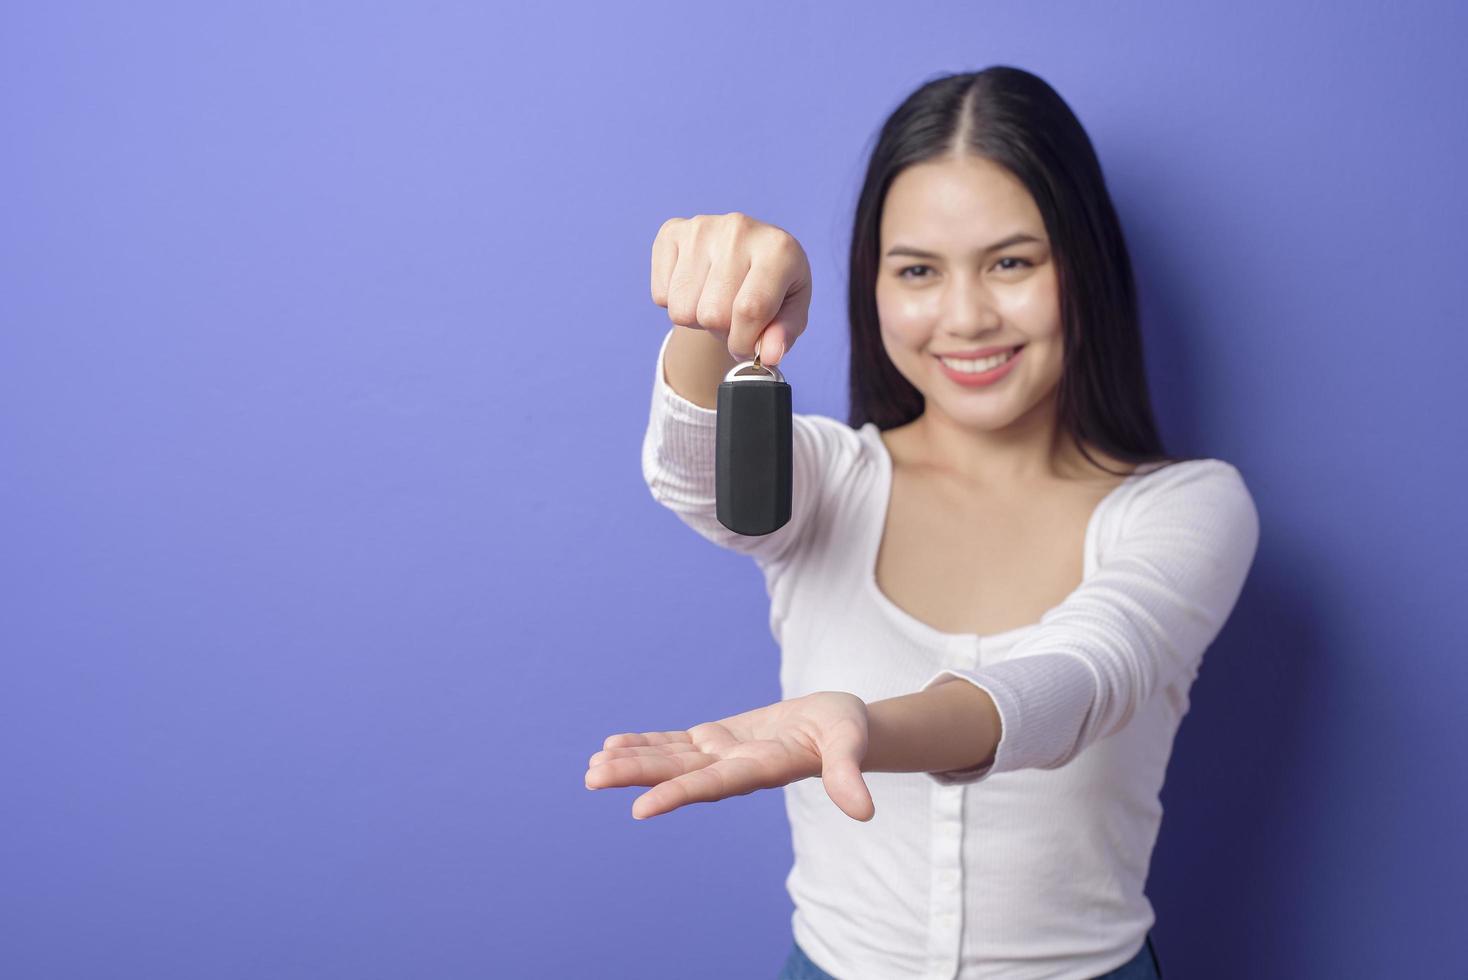 Junge schöne lächelnde Frau hält Autoschlüssel über isoliertem lila Hintergrundstudio foto